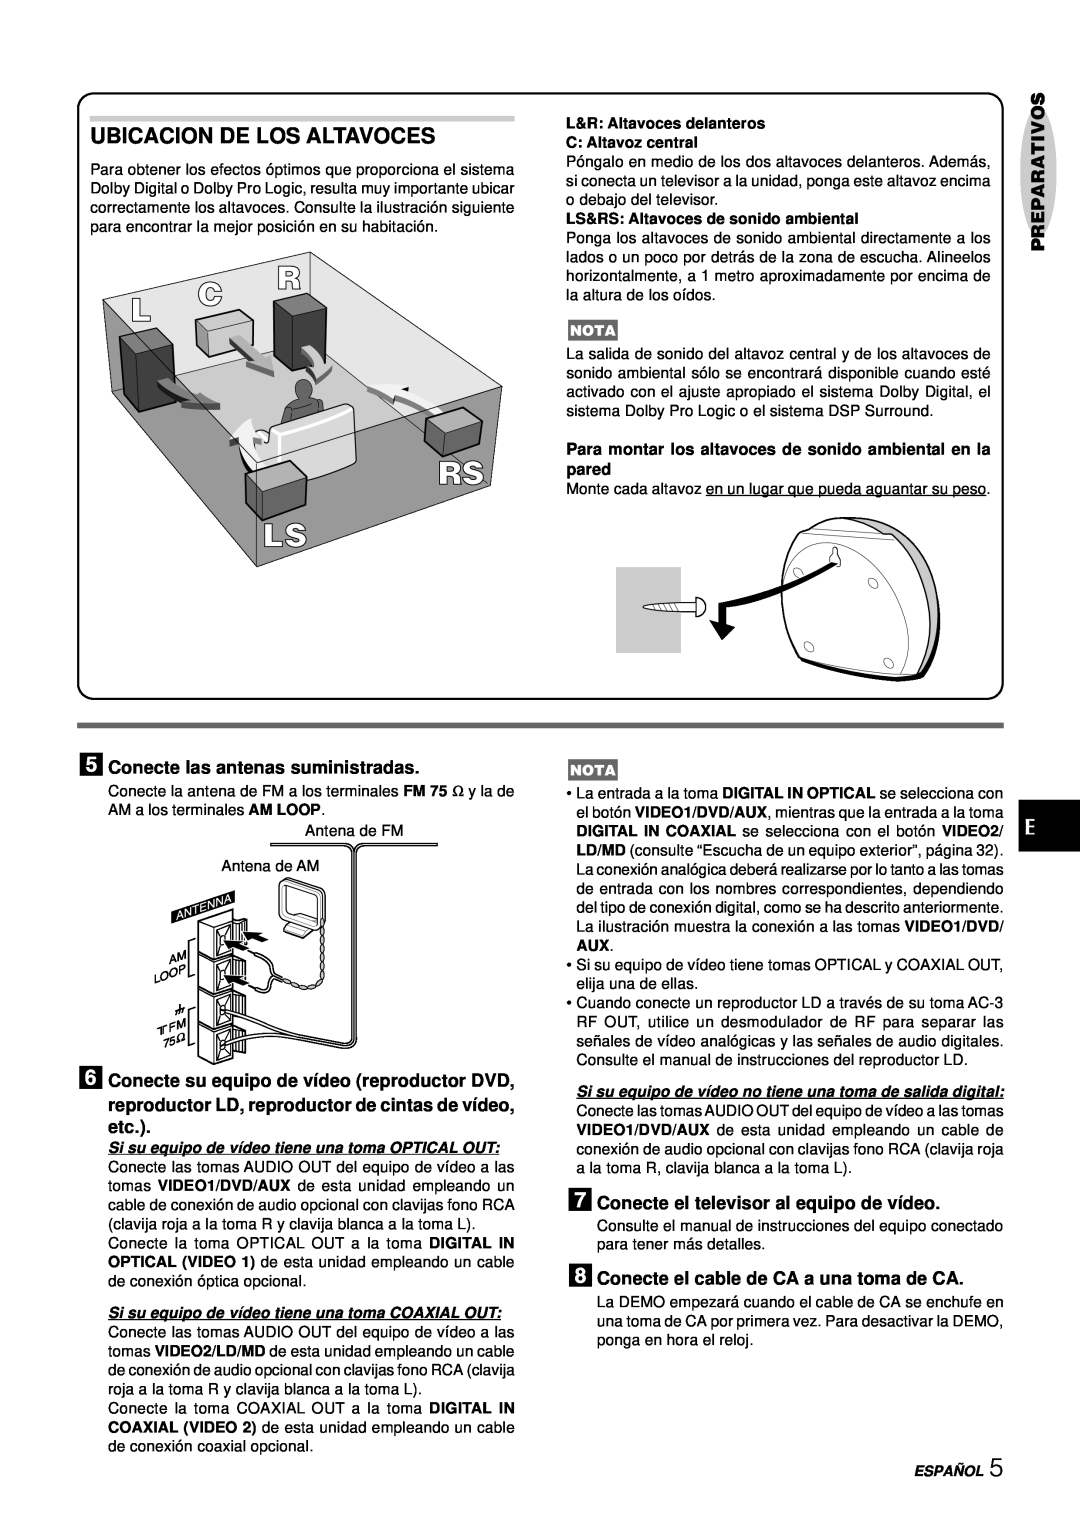 Aiwa NSX-DS8 manual Ubicacion De Los Altavoces, Preparativos, 5Conecte las antenas suministradas, Españ Ol 